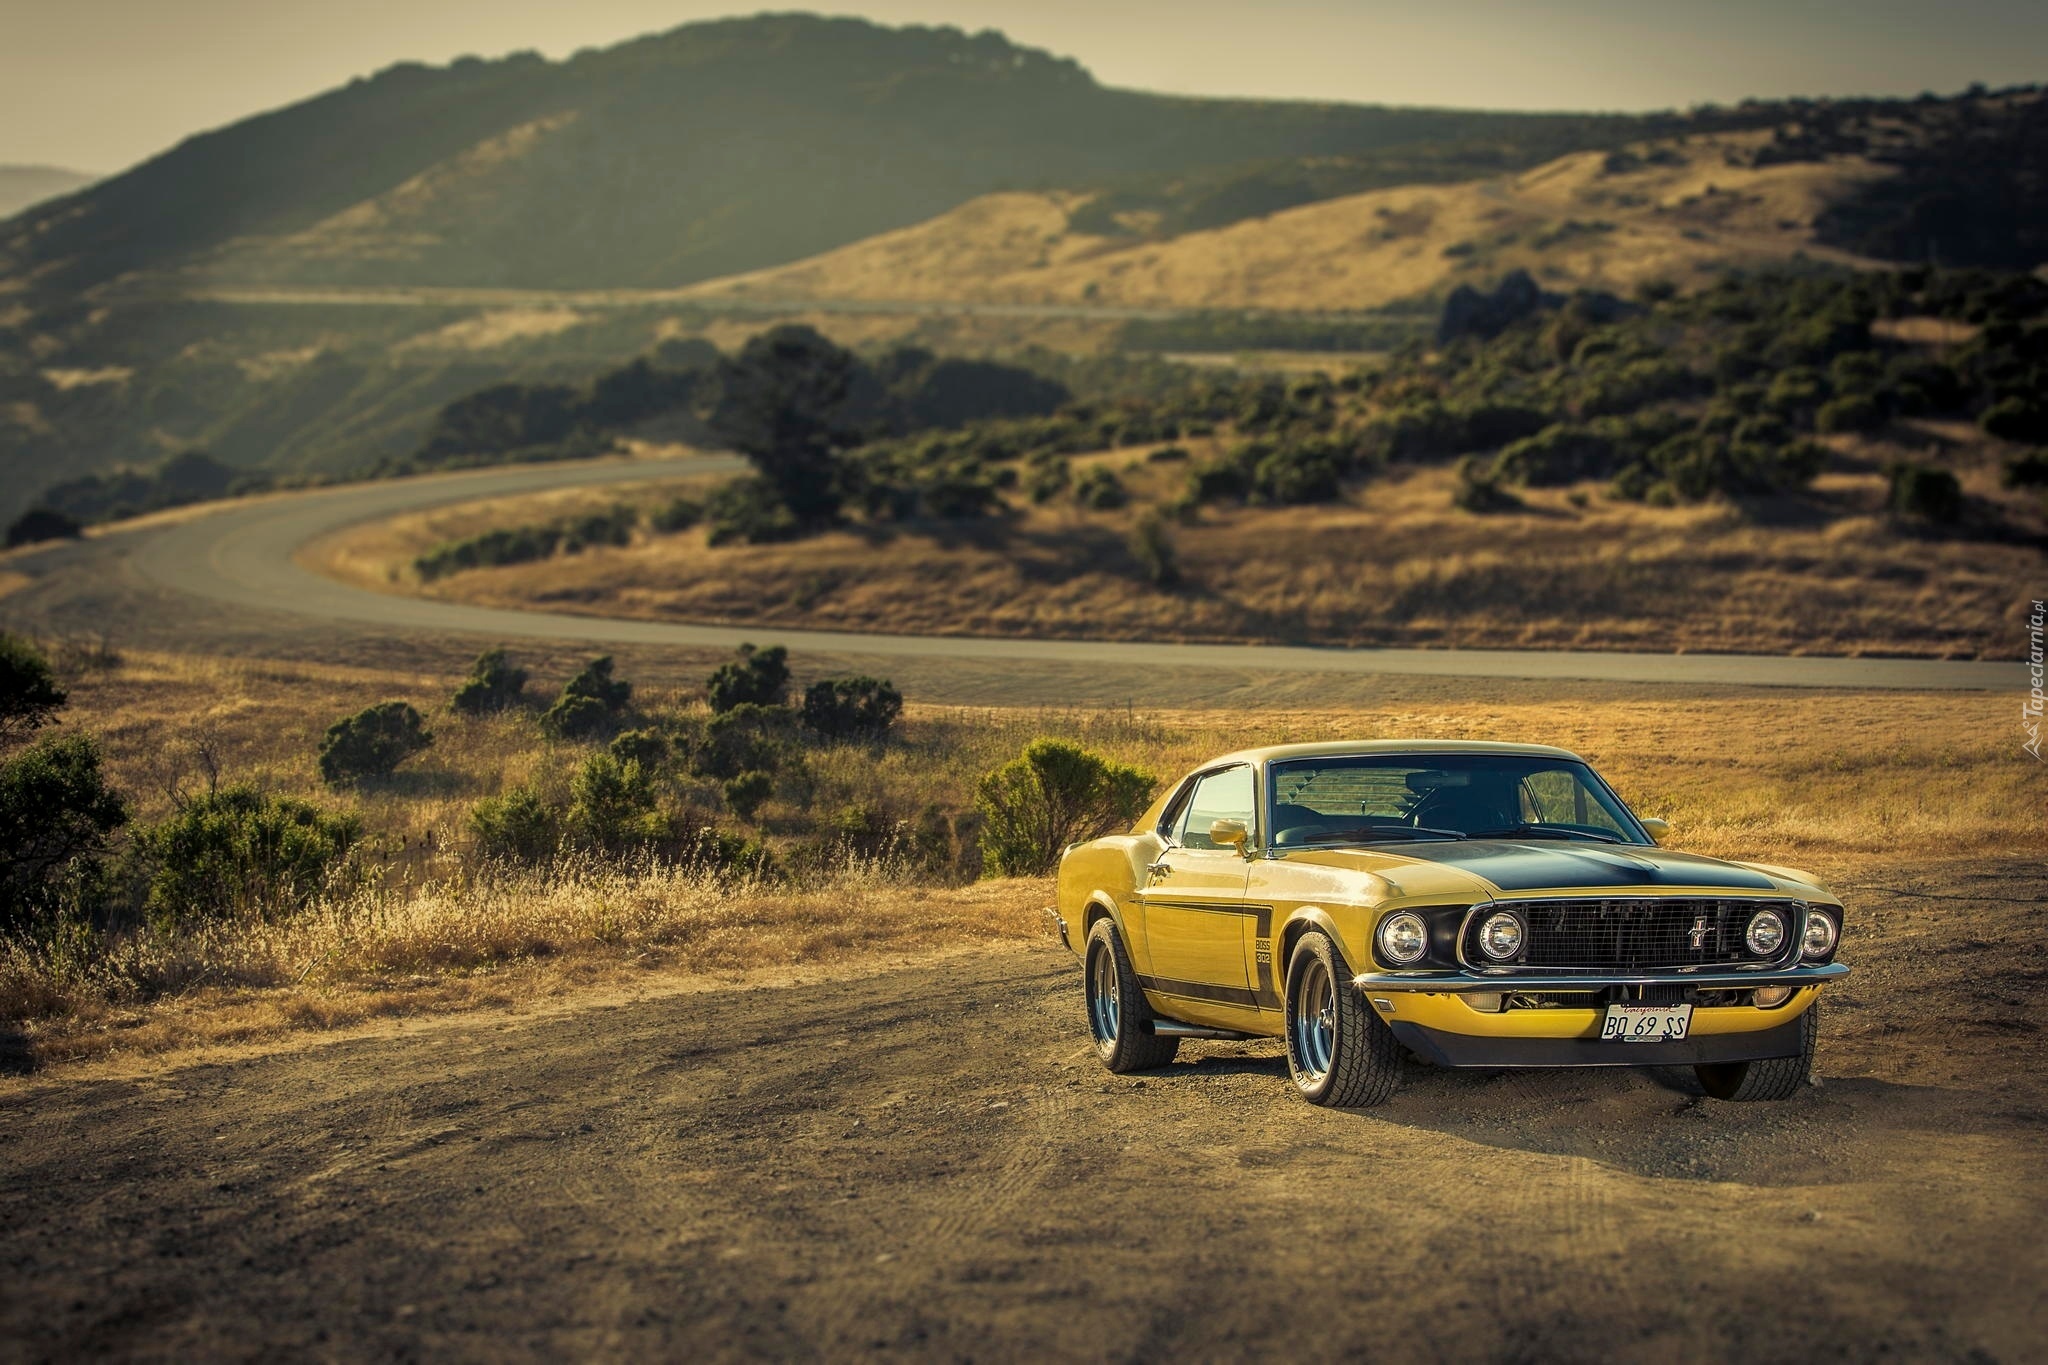 Edycja Tapety Żółty Ford Mustang W Drodze